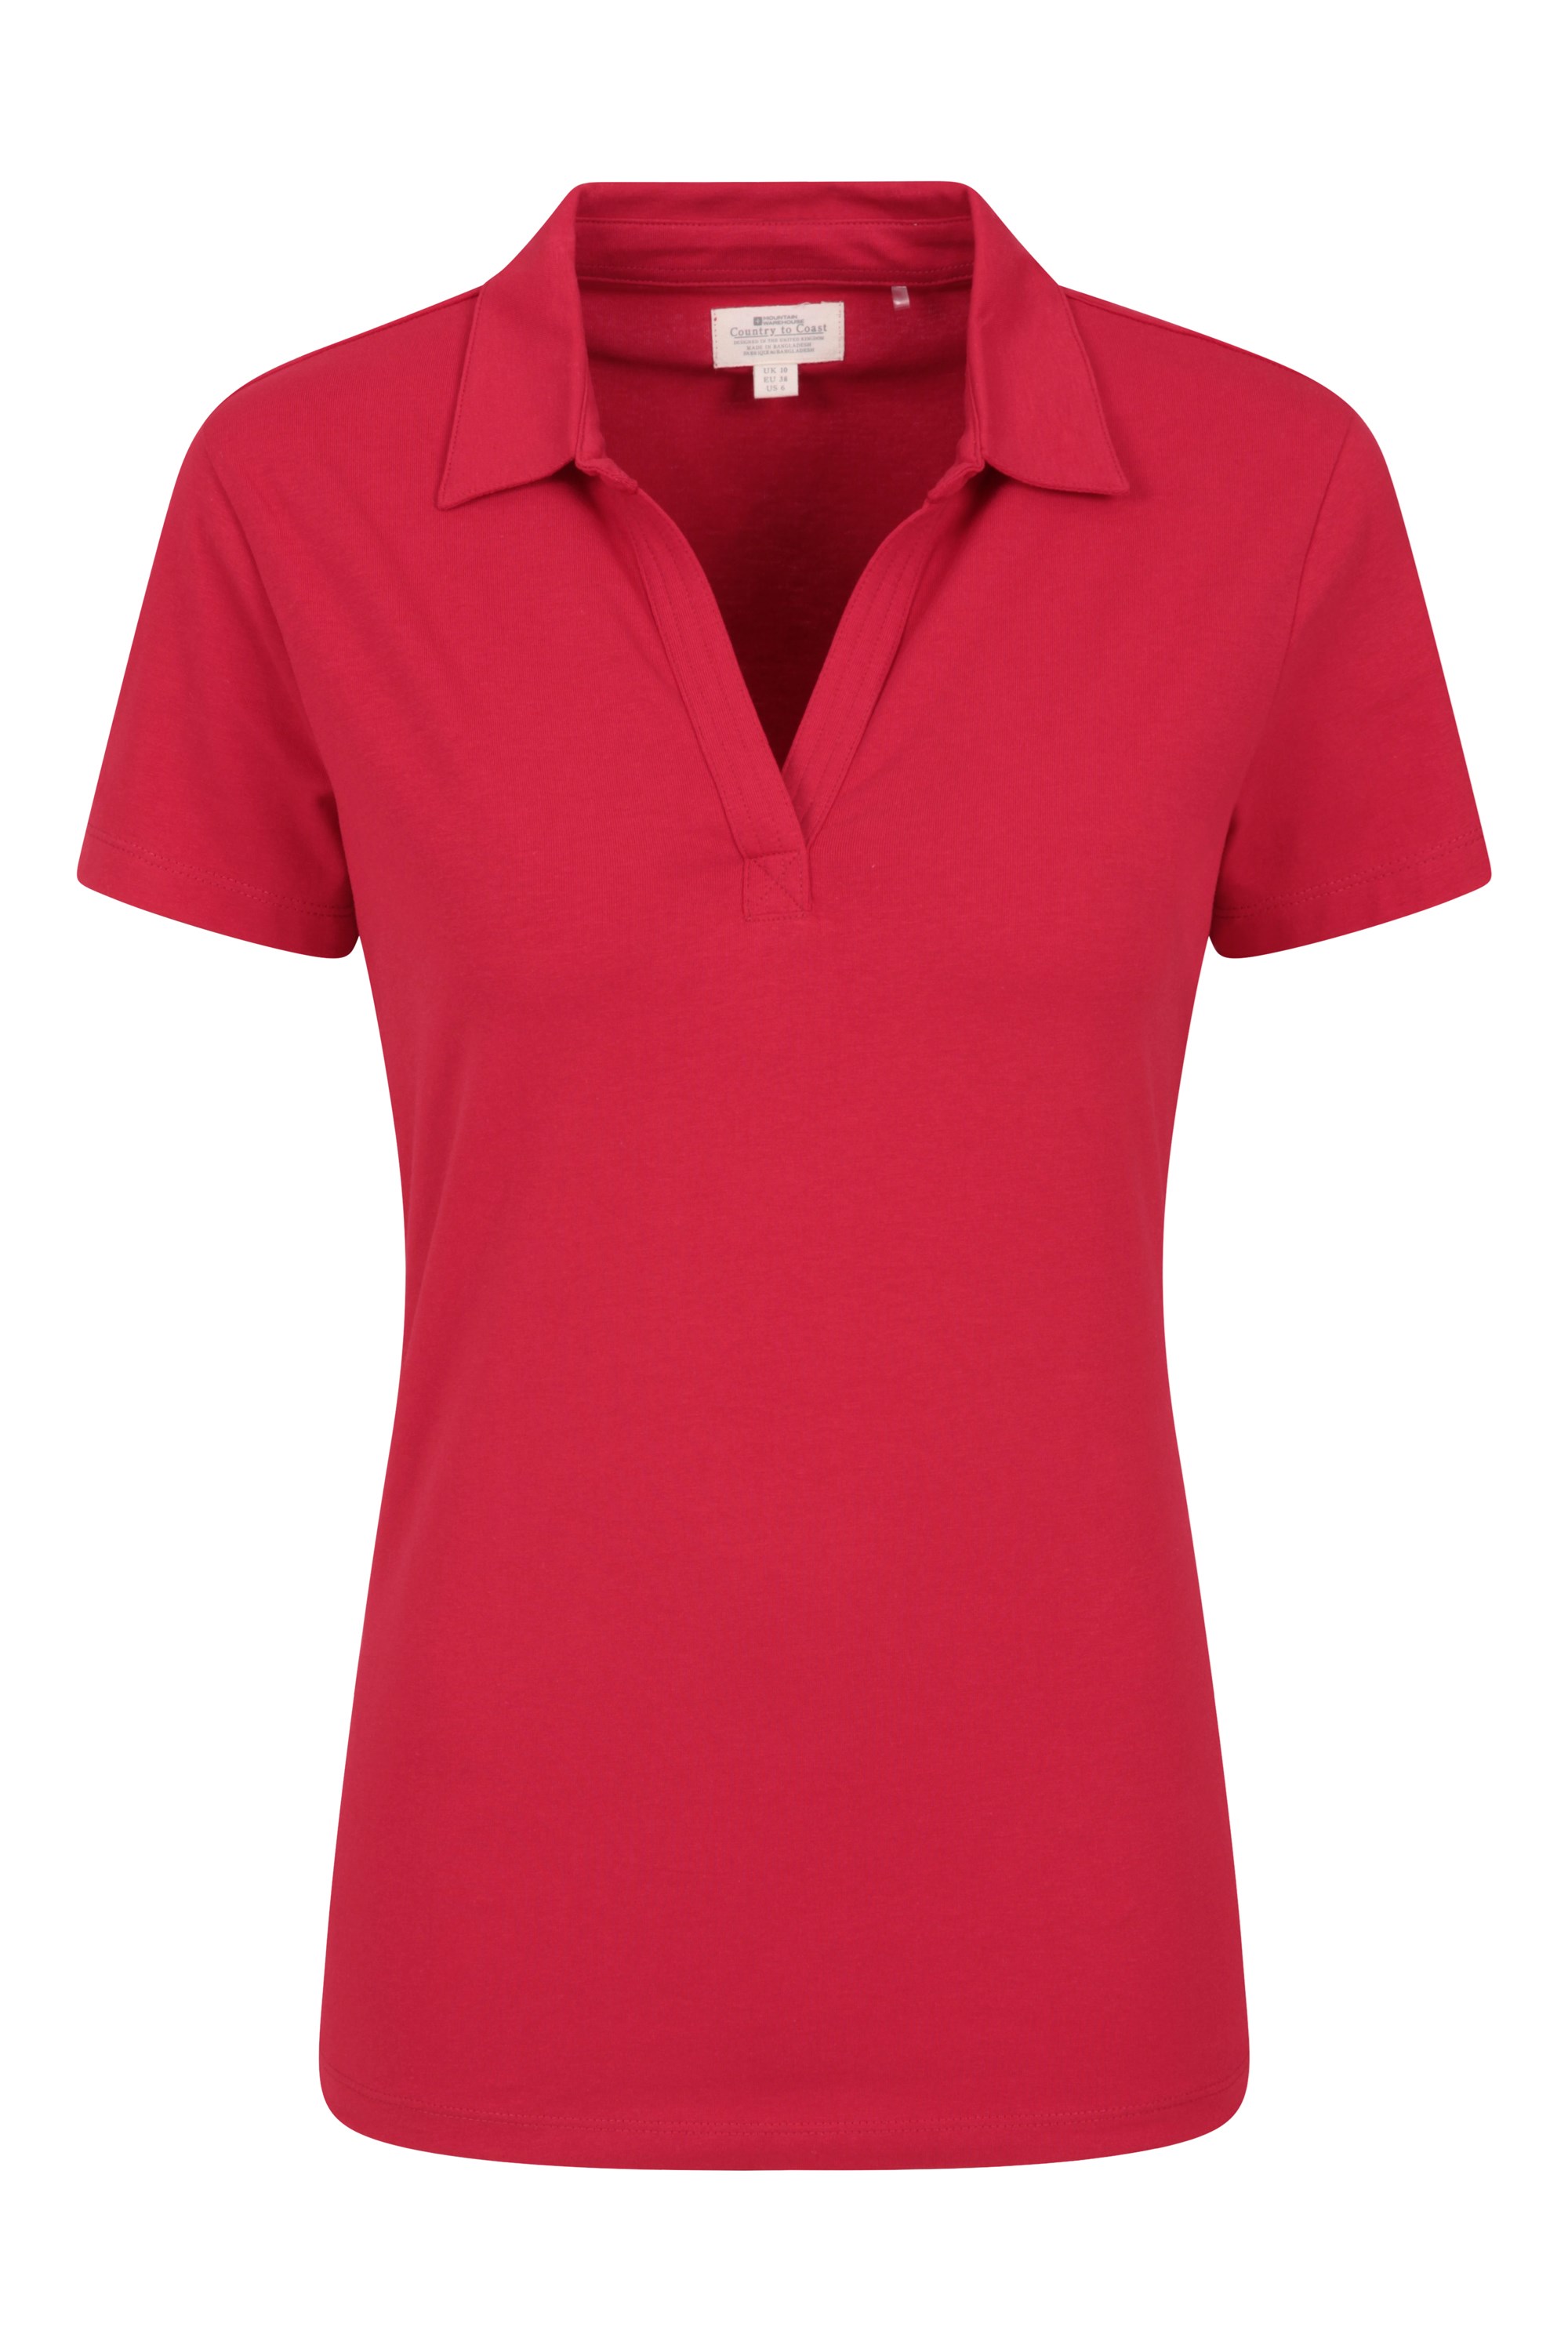 Wandern & Outdoor ideal für Sommer Laufen leichtes T-Shirt Top mit V-Ausschnitt Mountain Warehouse UV-Polo für Damen UV-Schutz-Damen-T-Shirt